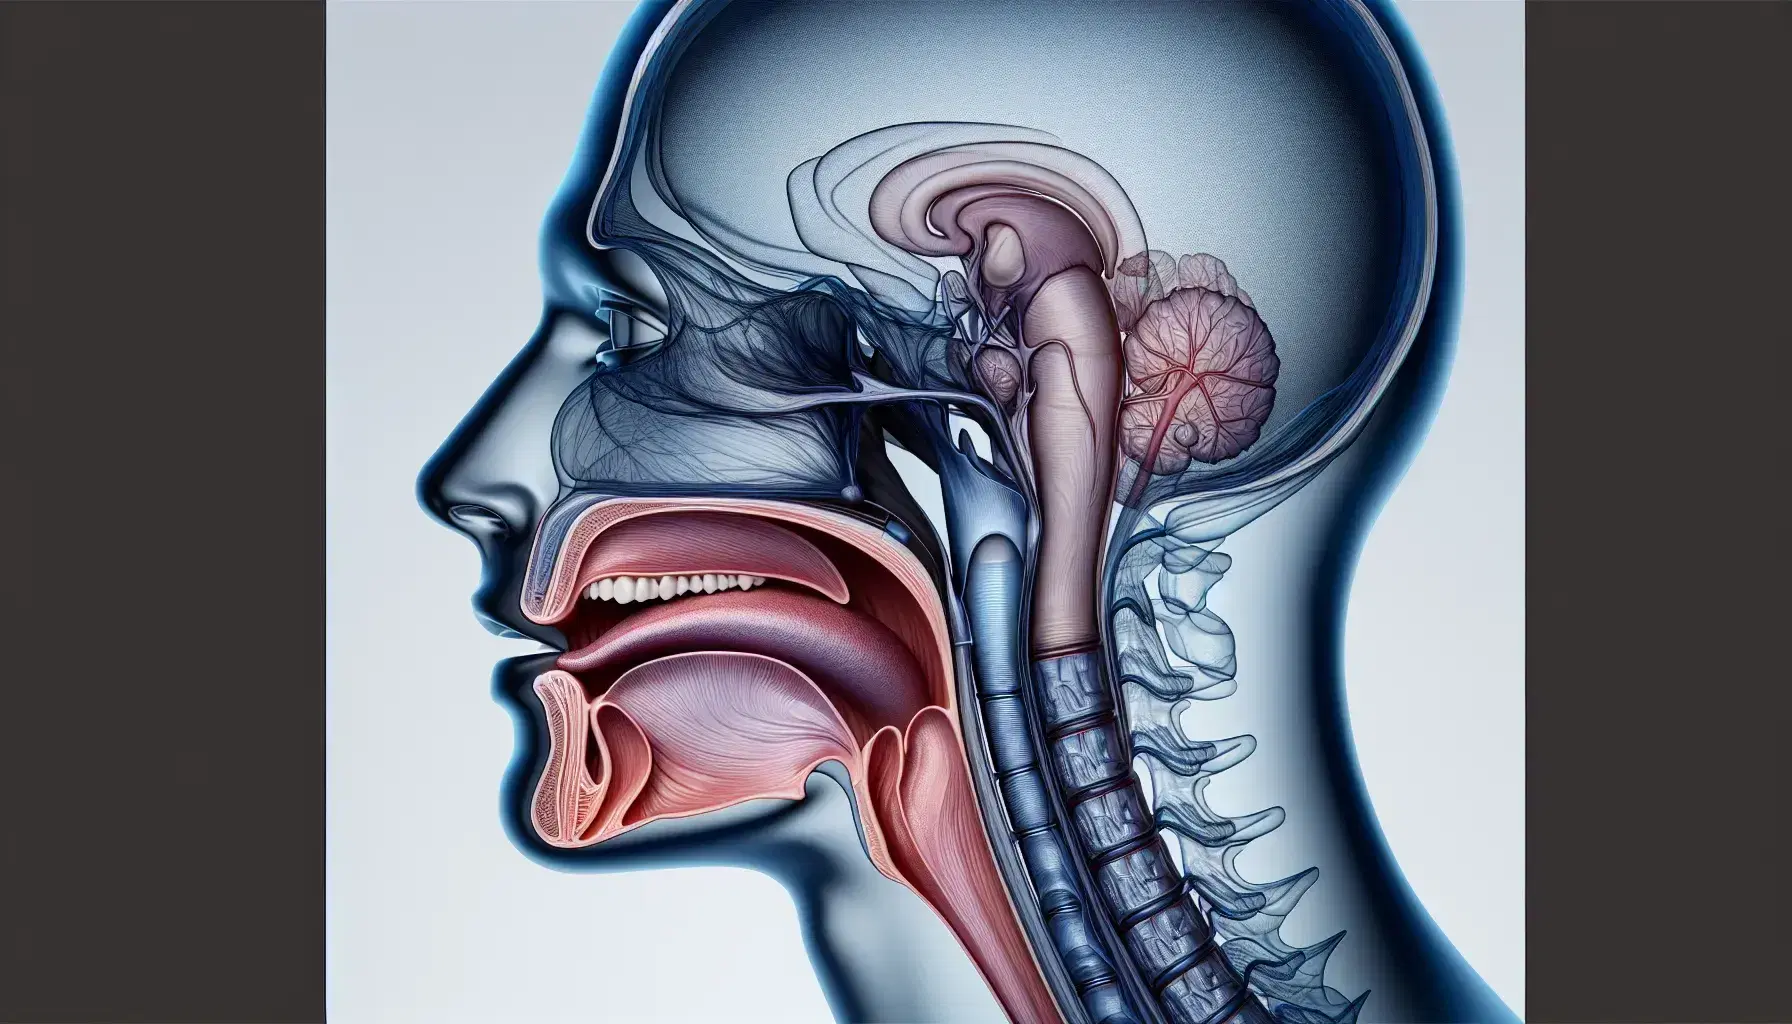 Vista lateral de una cabeza humana transparente mostrando la anatomía detallada del aparato vocal, incluyendo mandíbula, dientes, lengua, paladar y laringe.